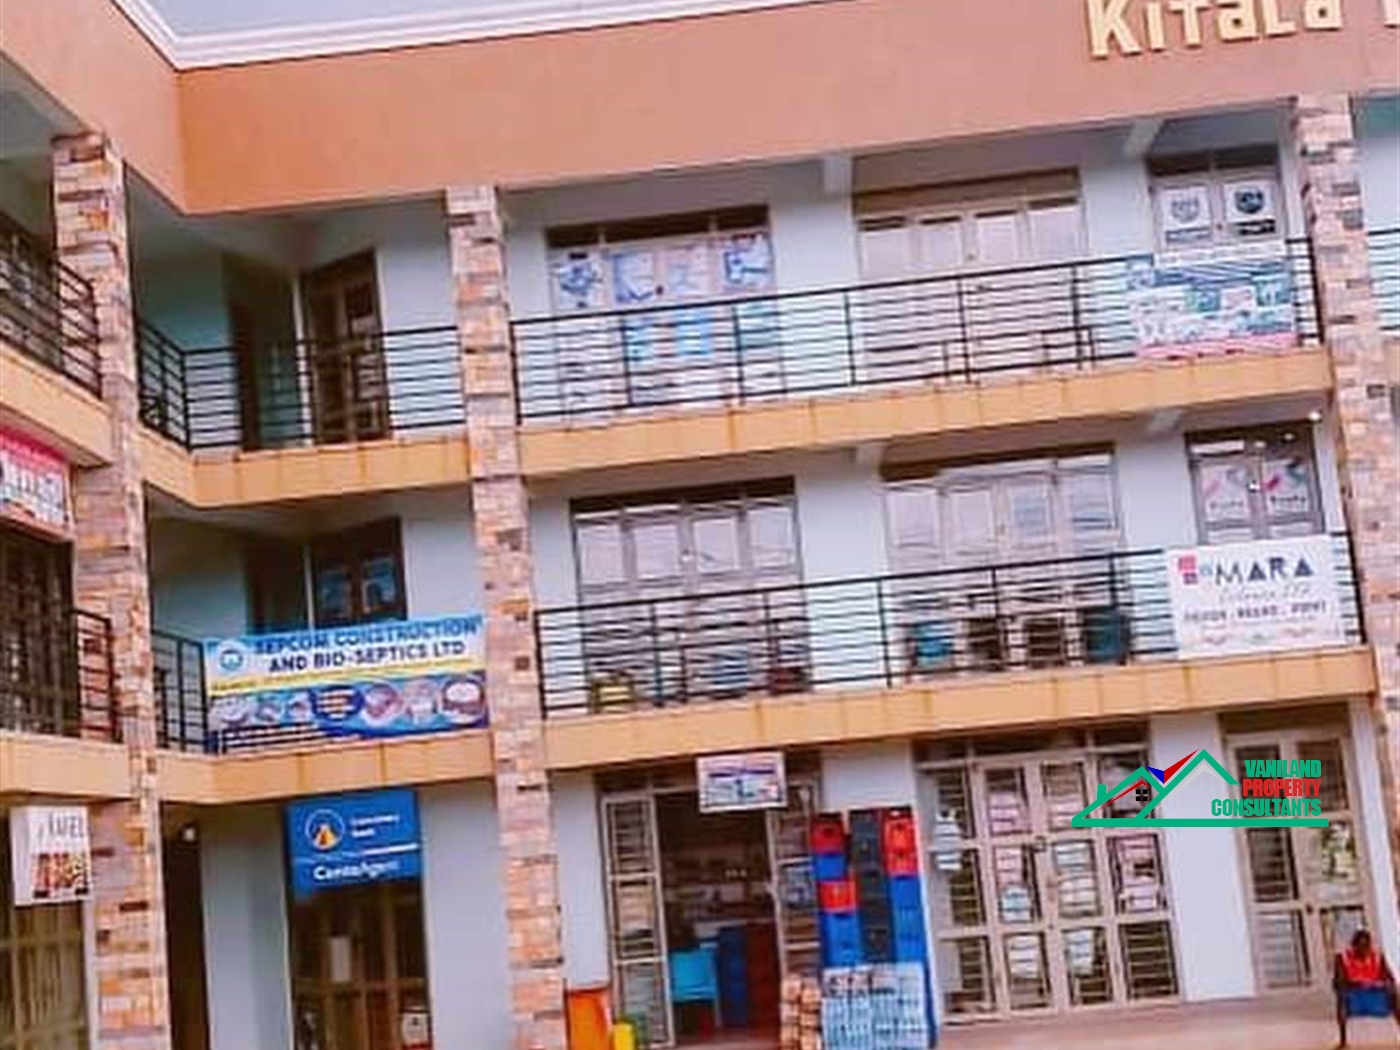 Commercial block for sale in Kitala Wakiso